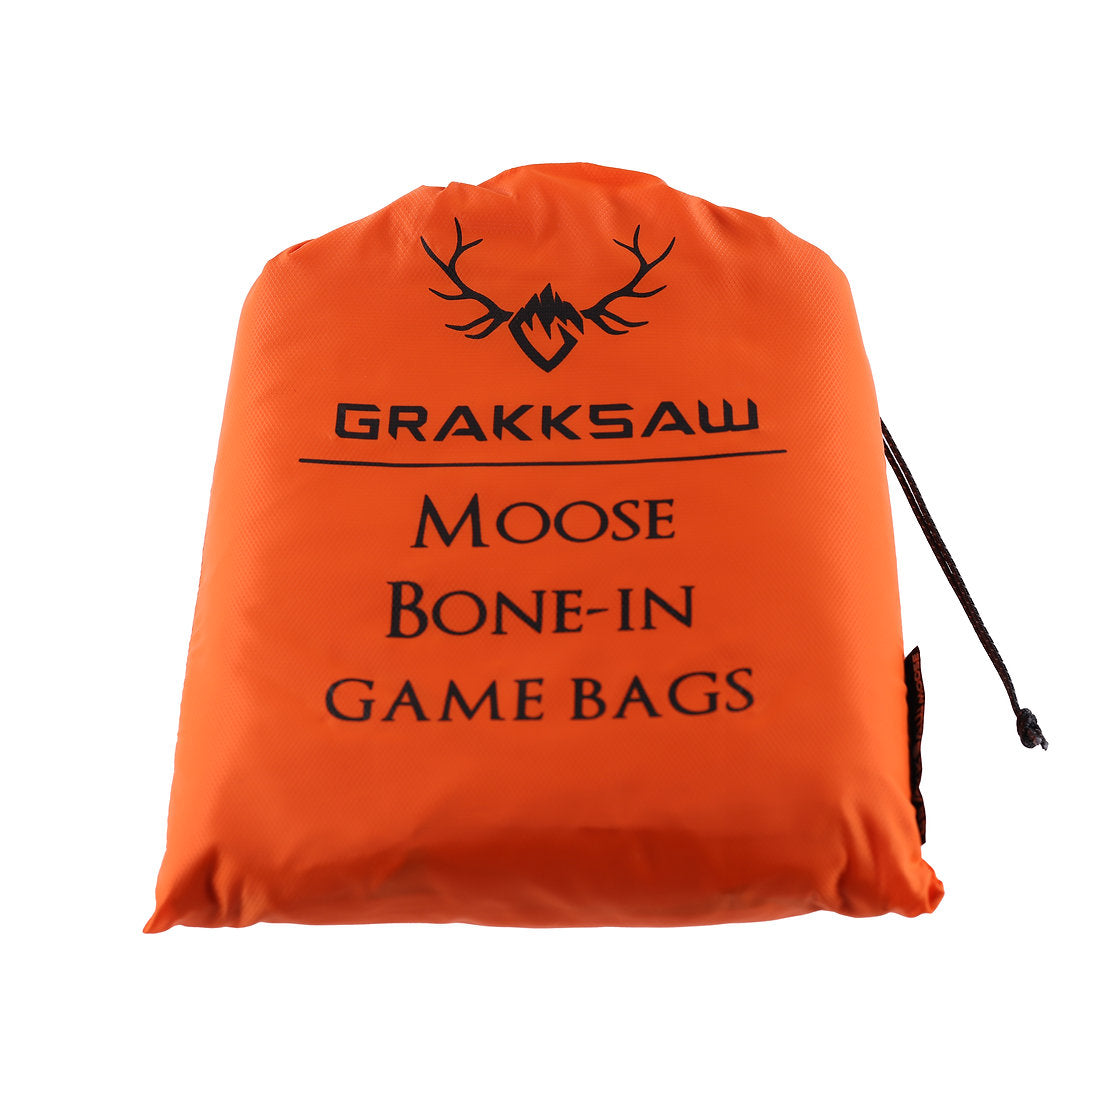 Grakksaw Moose Game Bags